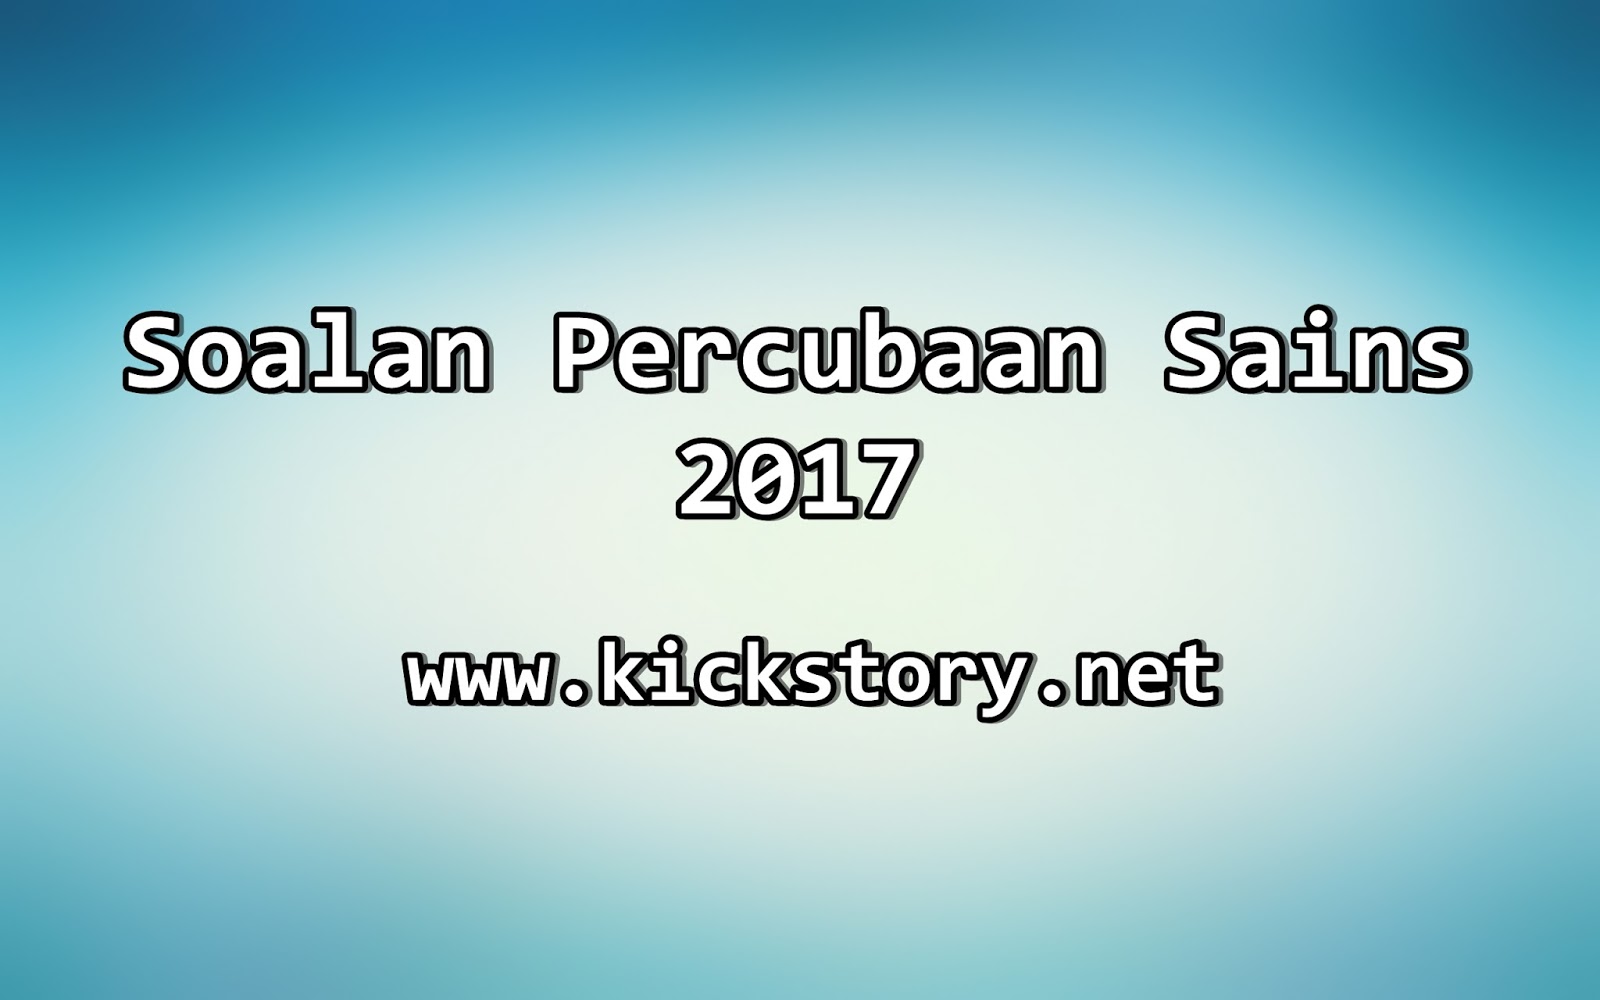 Soalan Percubaan Sains 2017 (Pahang) - Kickstory.net